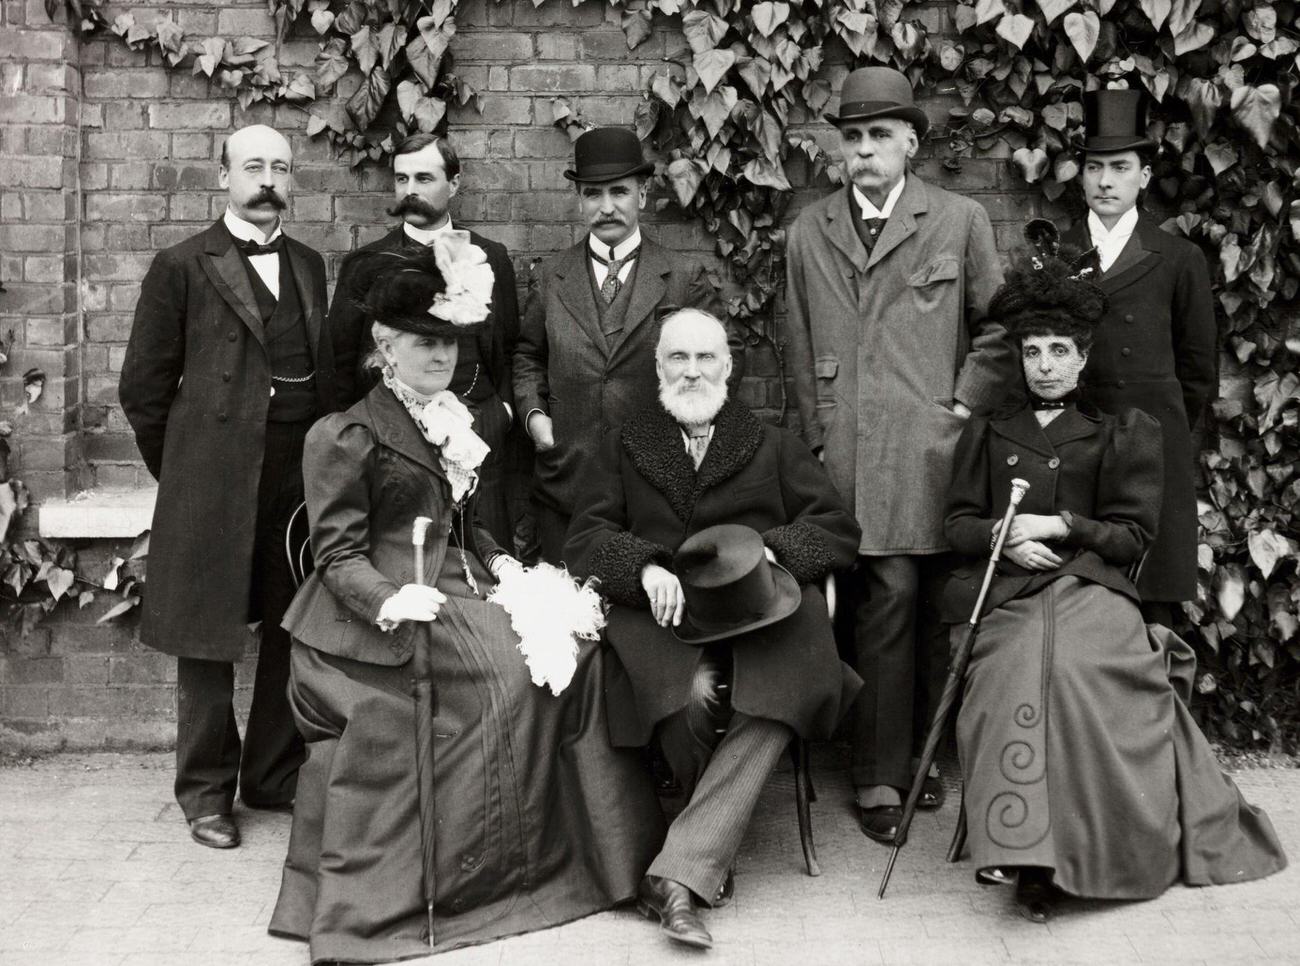 Victorian group posing in a garden, circa 1900.